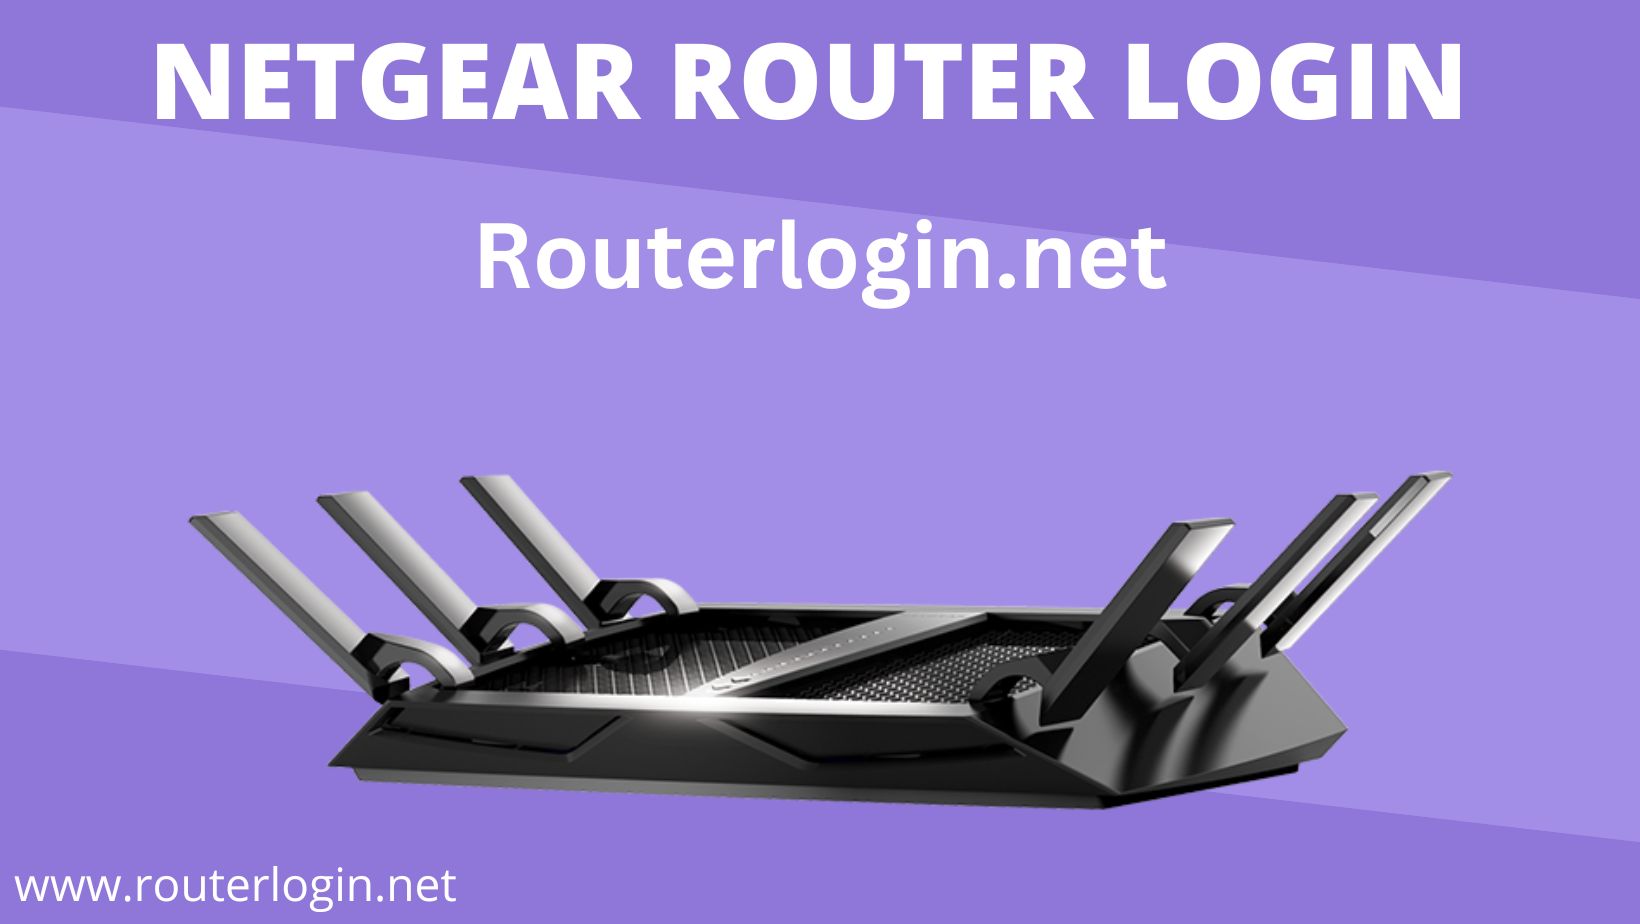 NETGEAR Router Login | routerlogin.net